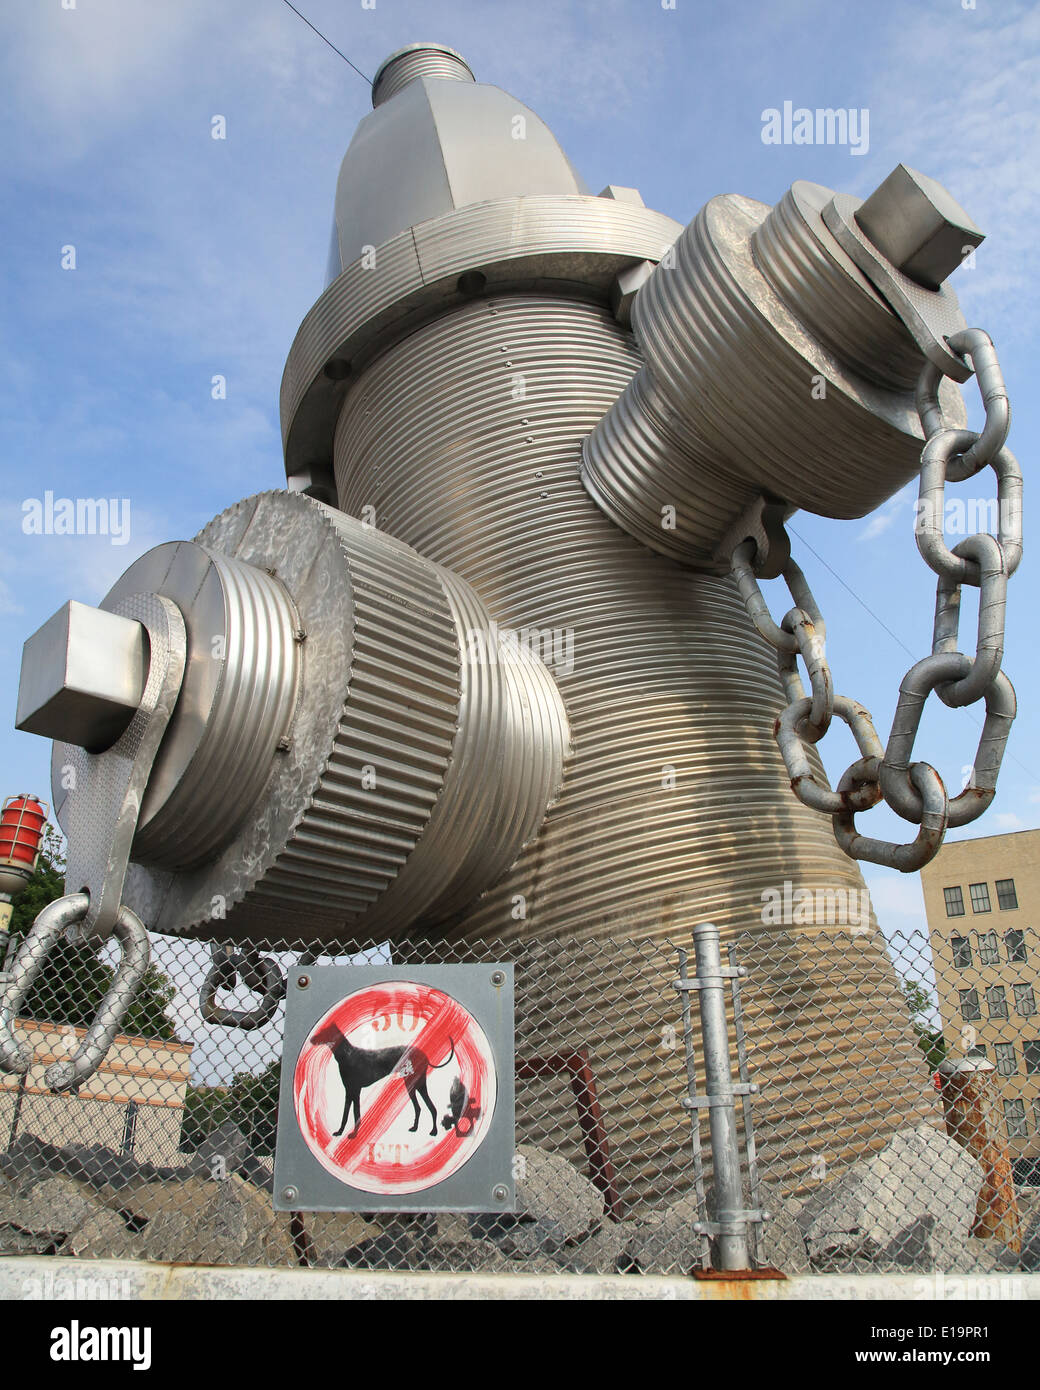 Die weltweit größte Hydranten, es offiziell an die Stadt Kolumbien vorgestellt wurde, South Carolina am 18. Februar 2001. Der Hydrant ist 39 Meter hoch mit fast fünf Tonnen schweren Skulptur in einem Betonsockel gesetzt. Fotos von Catherine Braun Stockfoto